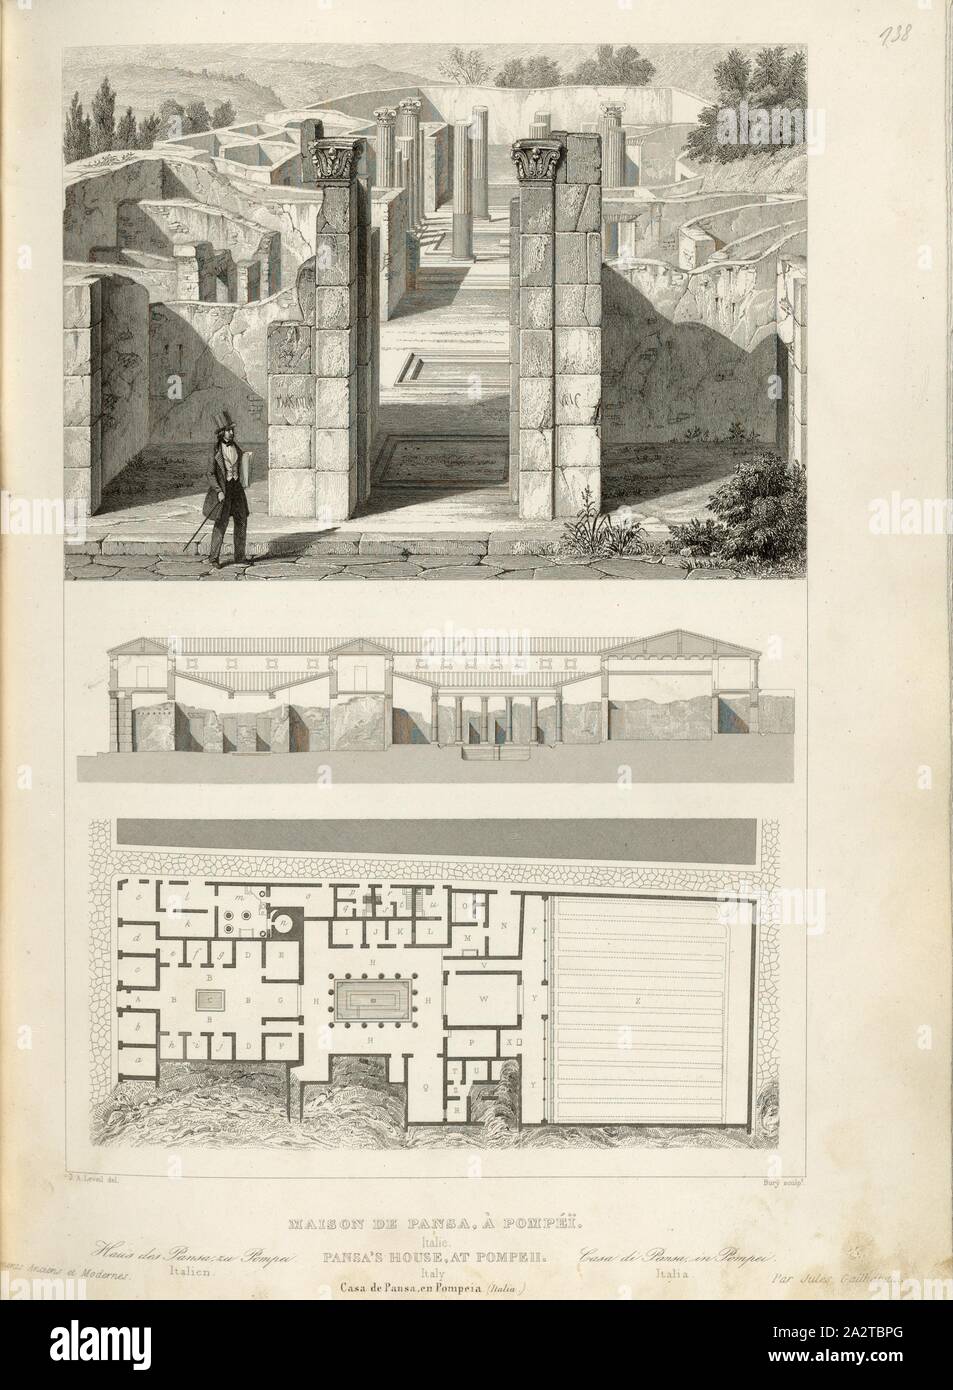 House of Pansa, Pompeii, House of Pansa in Pompeii, signed: J. A. Leveil (del.); Bury (sc.), Fig. 83, p. 347, Leveil, J. A. (del.); Bury (sculp.), 1853, Jules Gailhabaud: Monuments anciens et modernes. Bd. 1. Paris: Librairie de Firmin Didot frères, 1853 Stock Photo